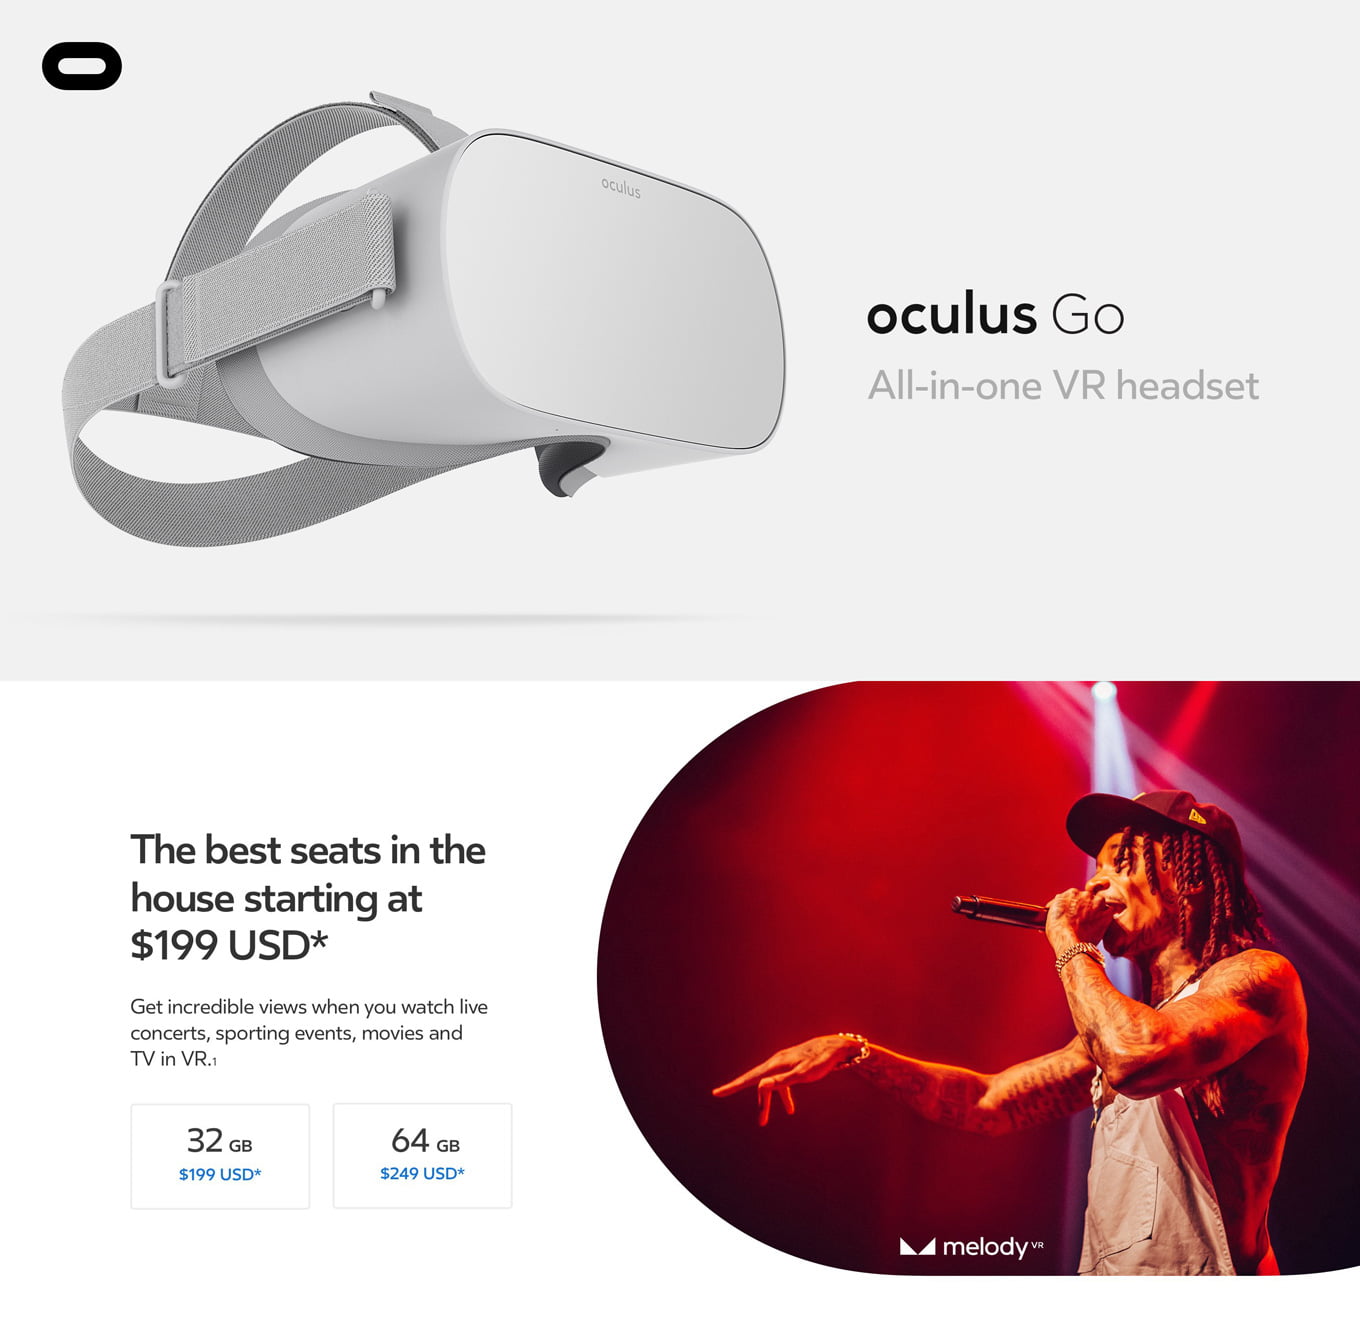 oculus go availability